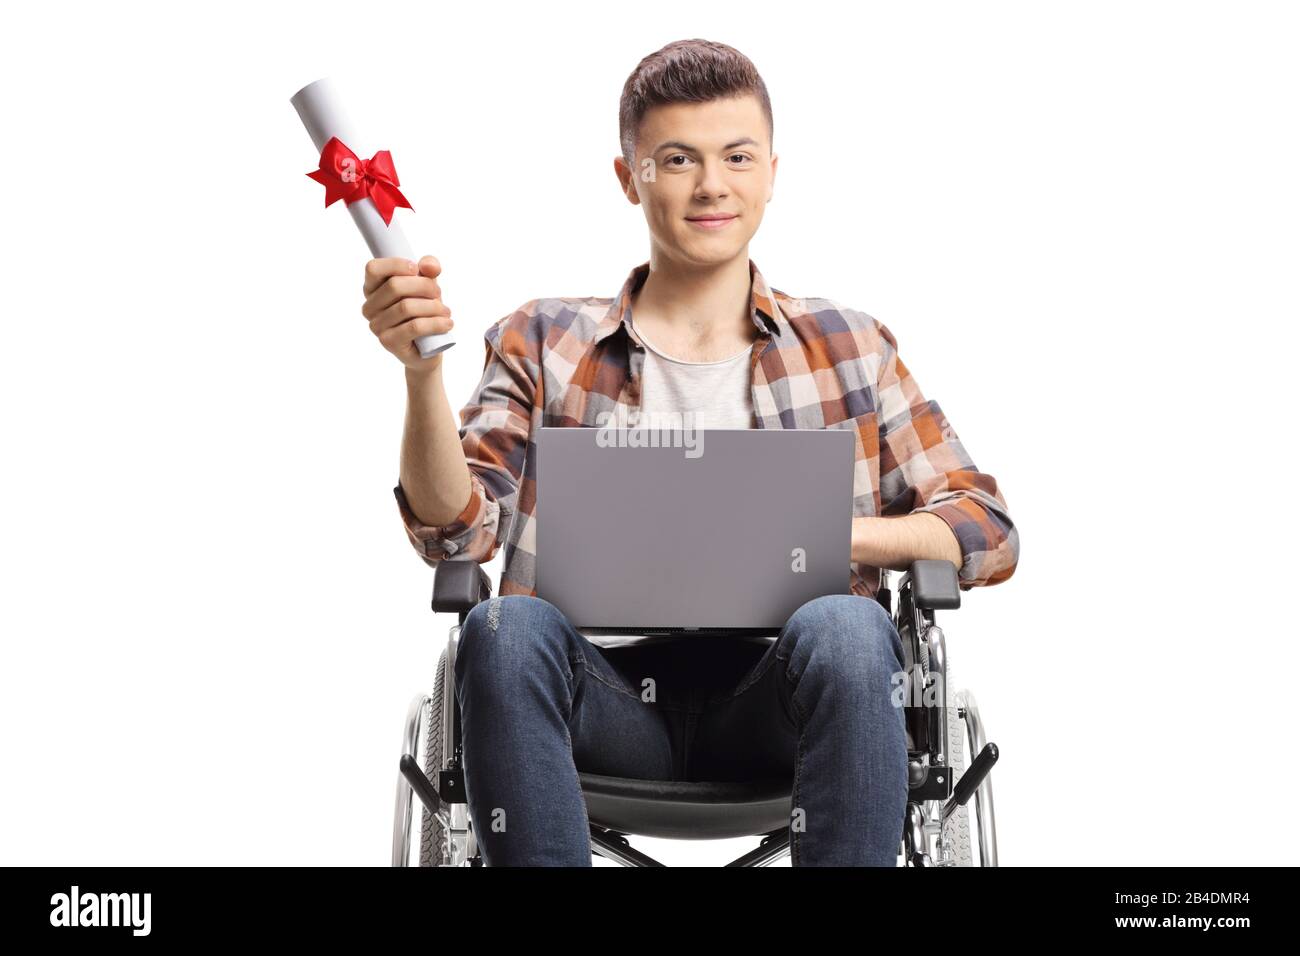 Behinderter Student im Rollstuhl mit Laptop und Abschlusszertifikat isoliert auf weißem Hintergrund Stockfoto